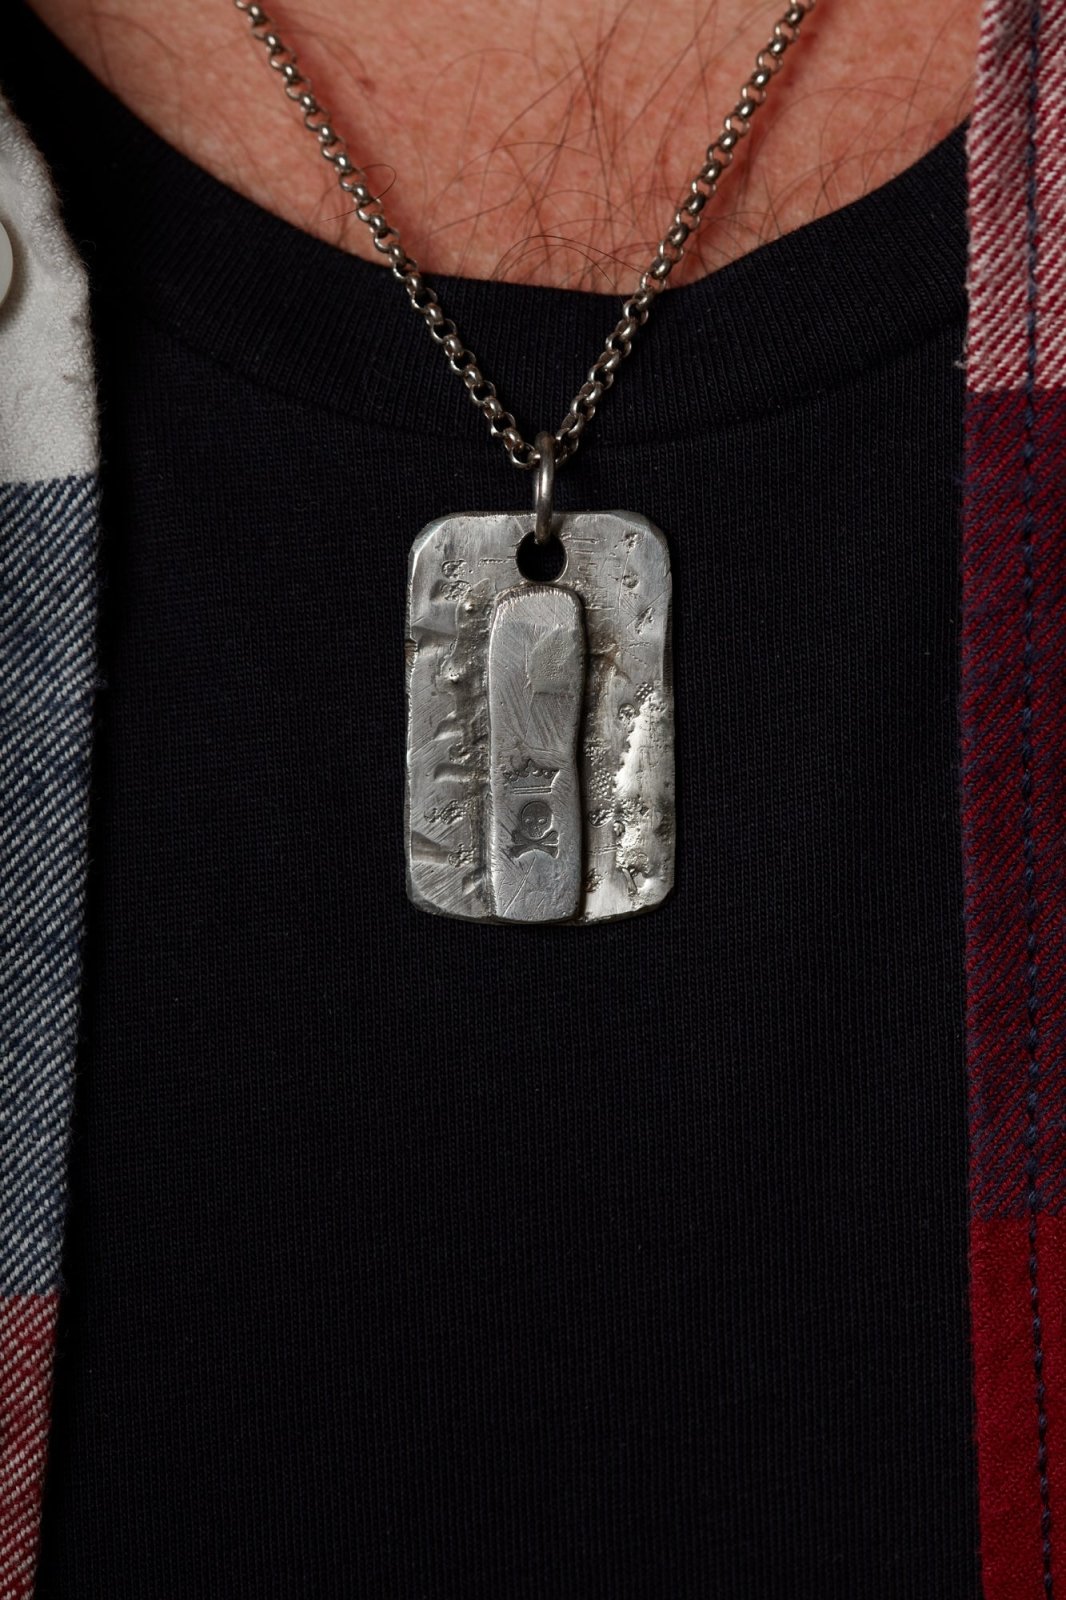 Silberkette mit Tag und Totenkopf, Unikat, Einzelstück, Halskette, Kette für Herren, detail am Hals